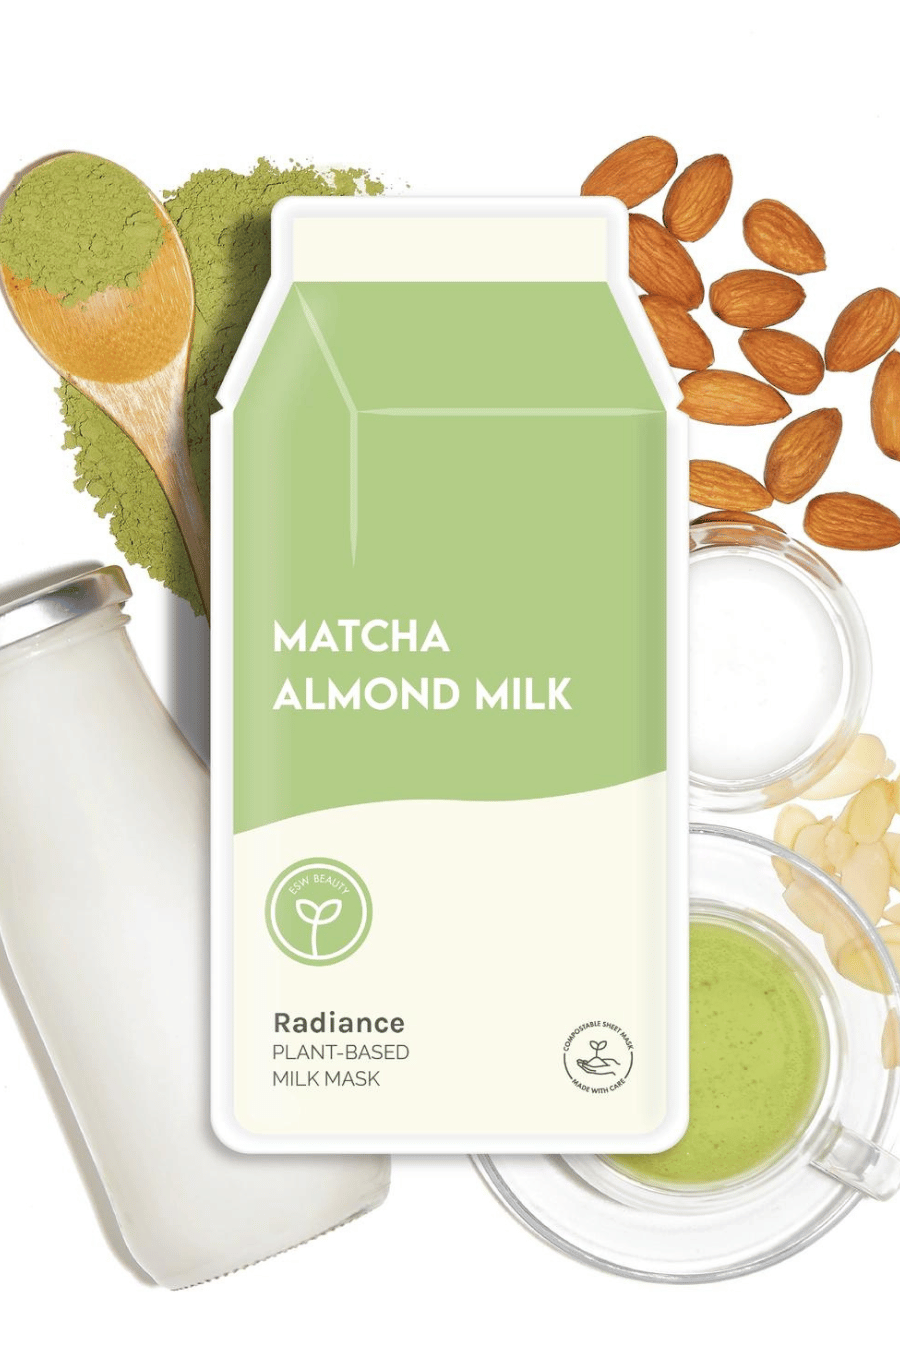 matcha almond milk face mask, almonds, matcha powder, almond milk